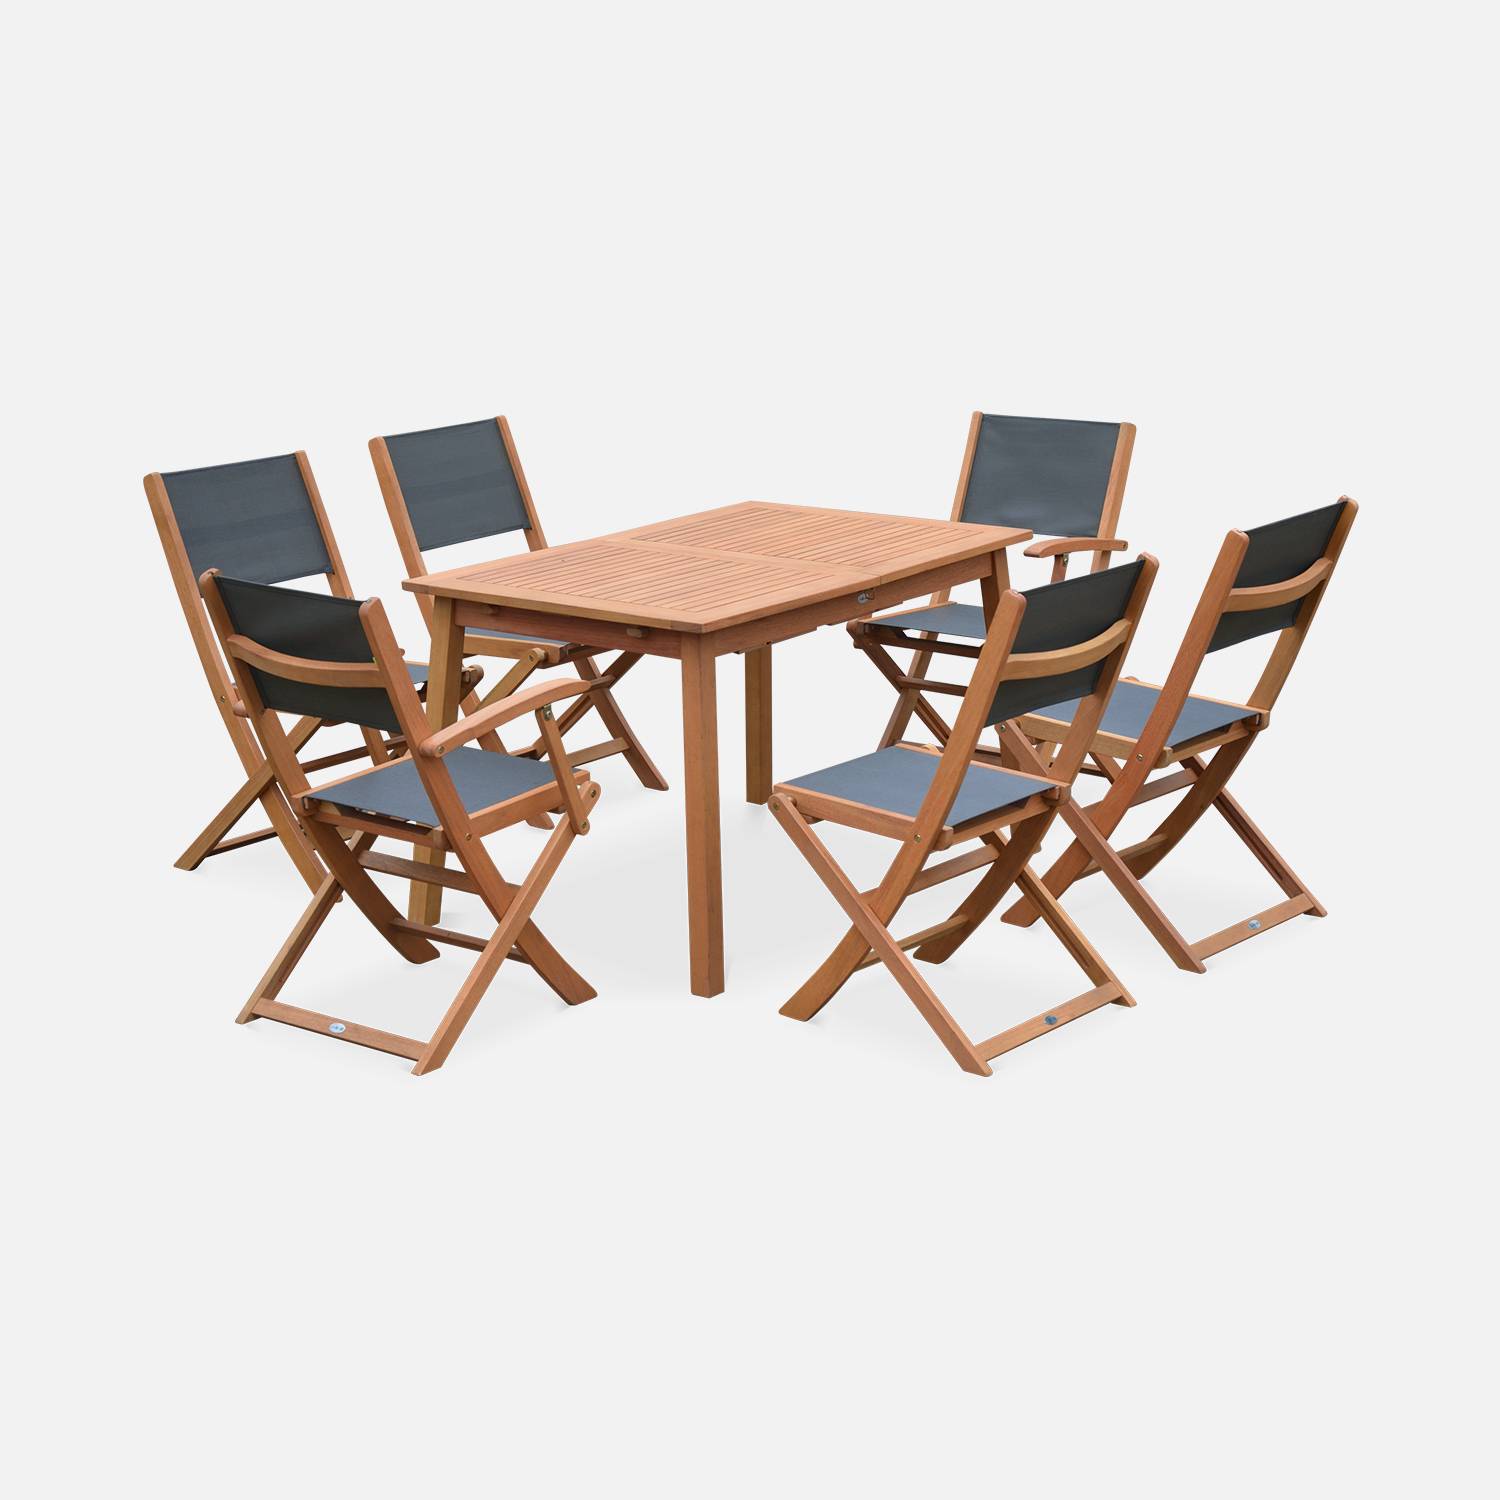 Ausziehbare Gartenmöbel aus Holz - Almeria - Tisch 120/180 cm mit Verlängerung, 2 Sesseln und 4 Stühlen aus geöltem FSC-Eukalyptusholz und anthrazitfarbenes Textilene Photo4